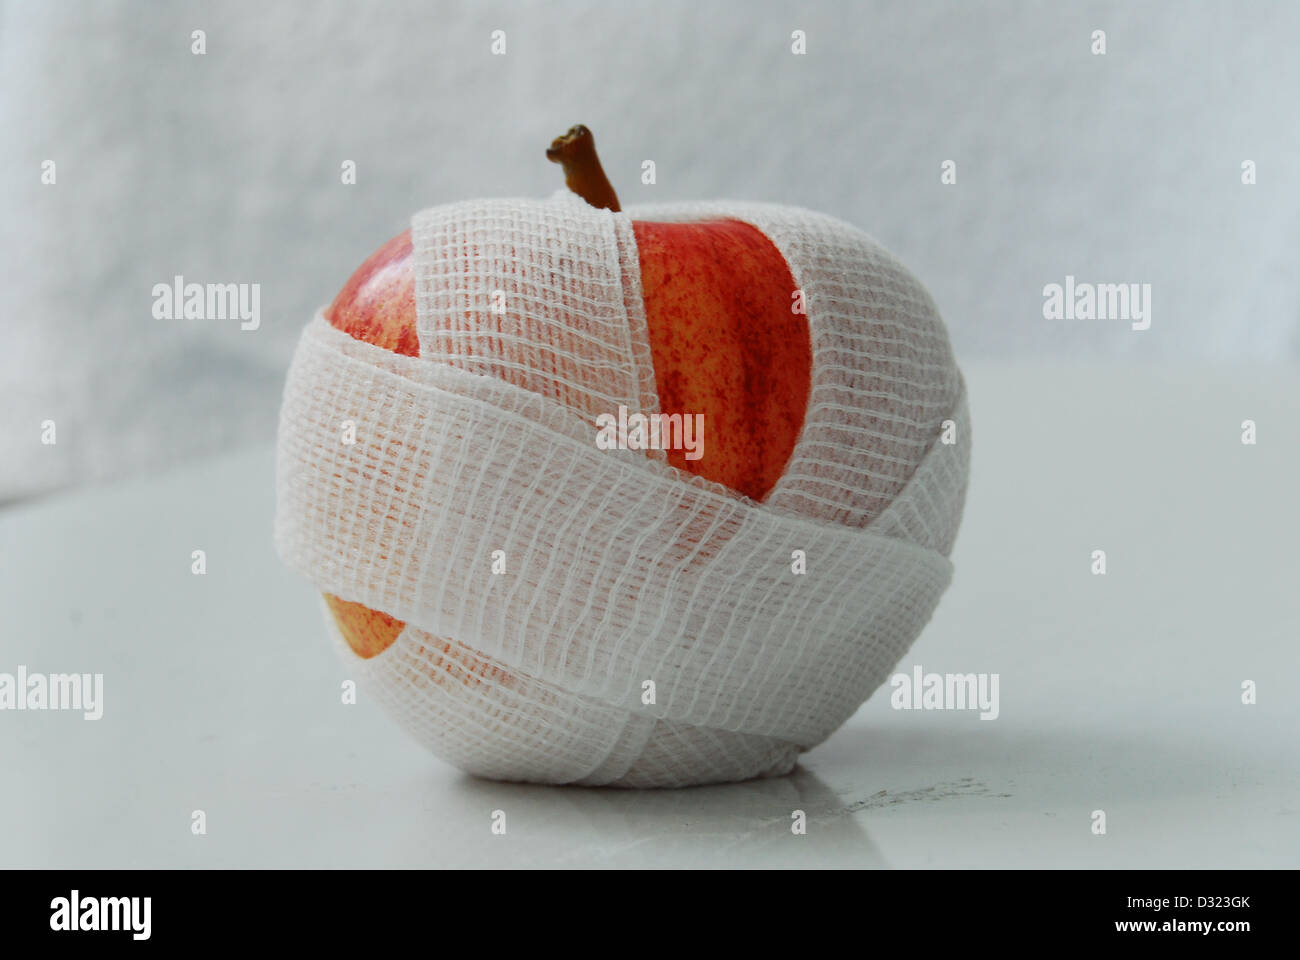 Ein roter und gelber Apfel auf einem weißen Hintergrund, eingehüllt in eine weiße Mullbinde mit einen oben genannten oder Vogelperspektive auf die Frucht. Stockfoto